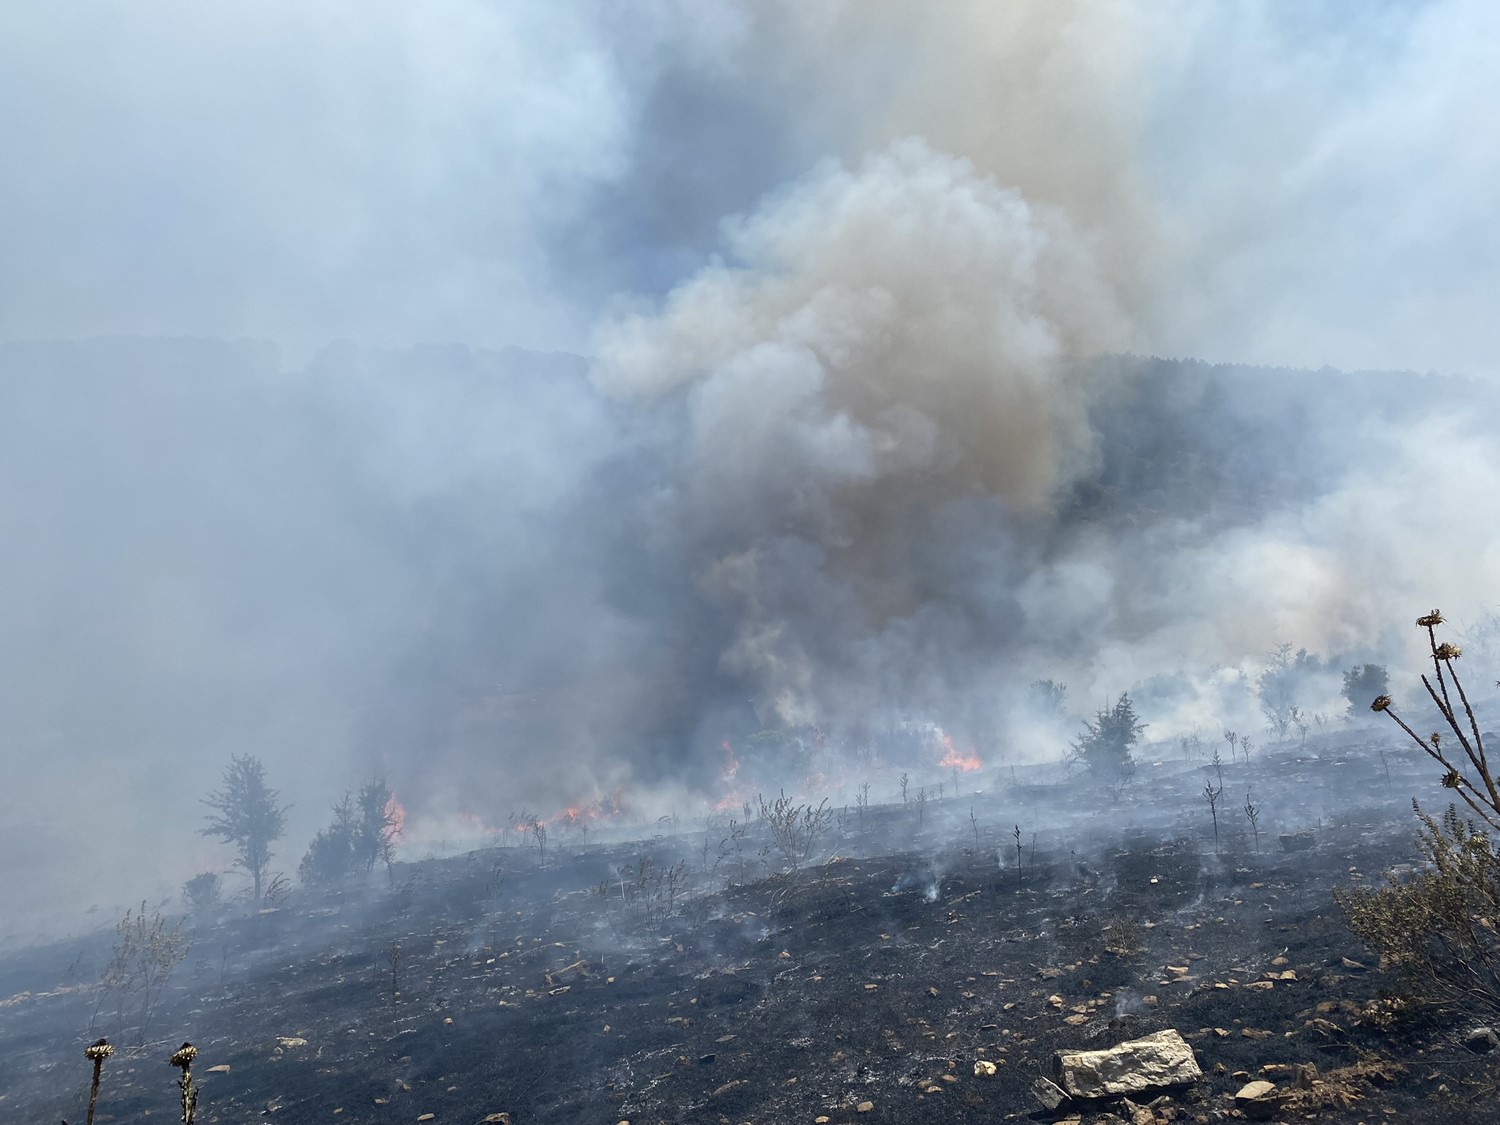 Manisa'da makilik alanda yangın